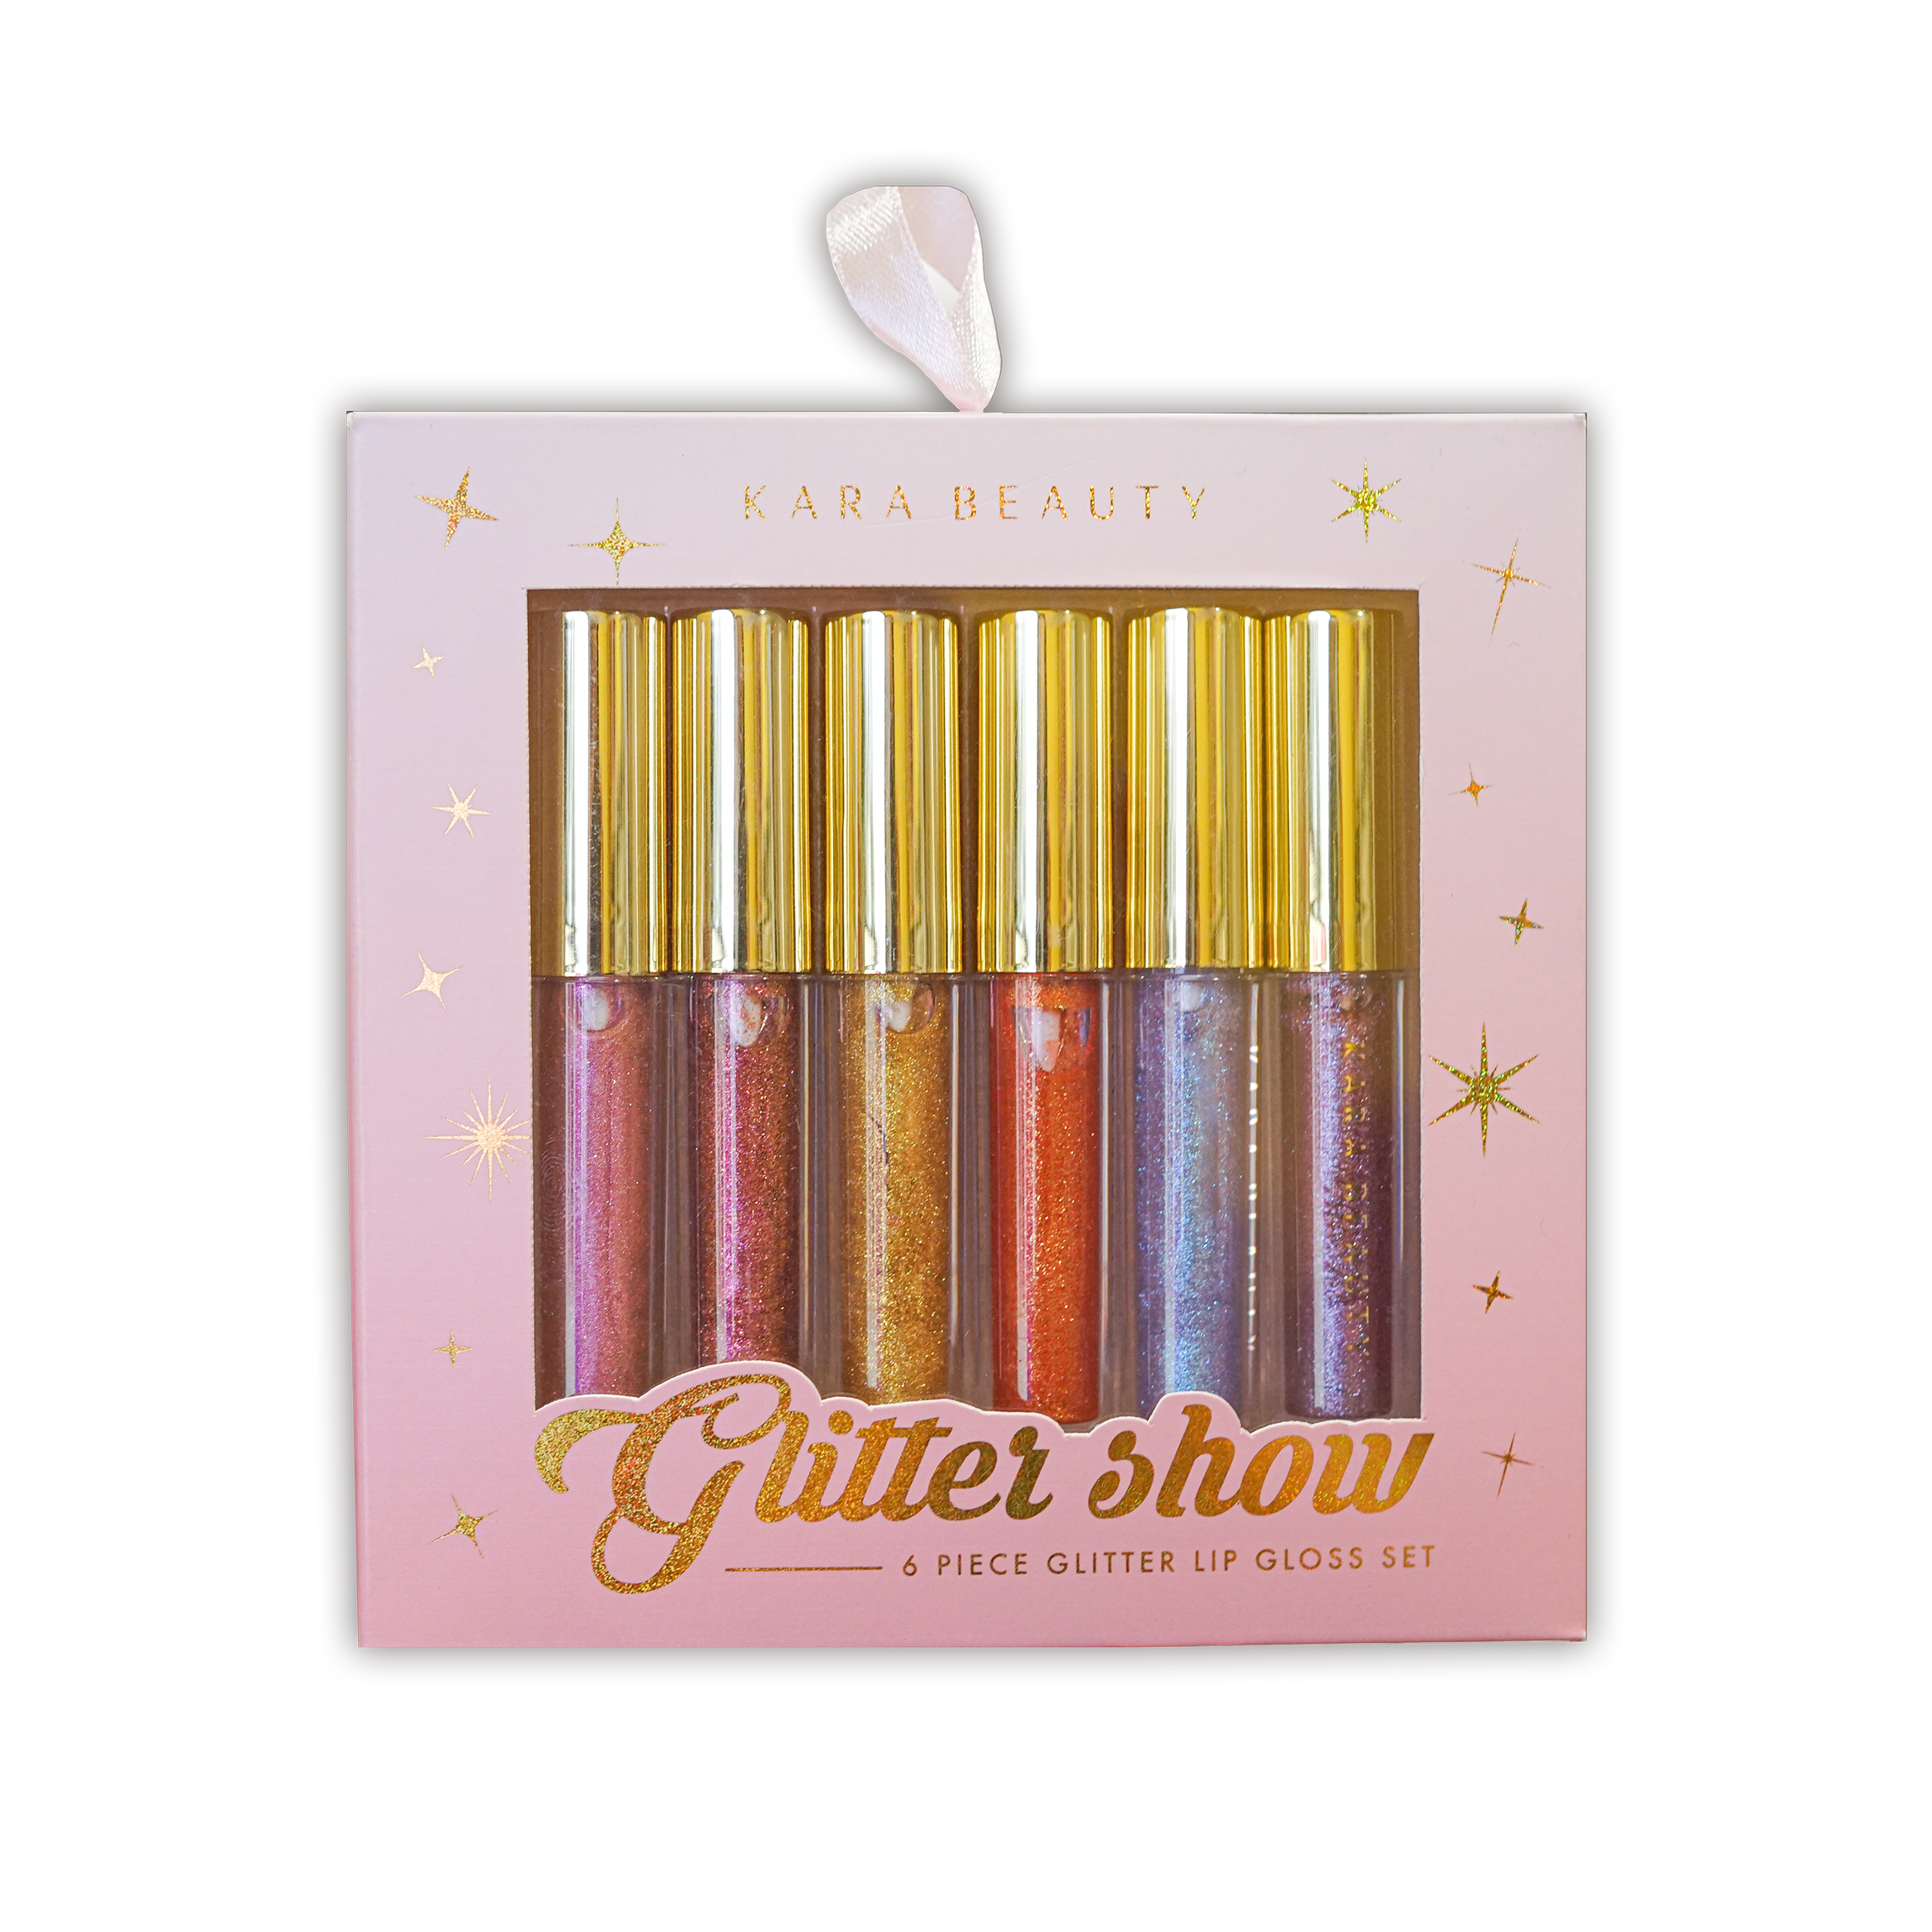 GLITTER SHOW 6 Piece Glitter Lip Gloss Set